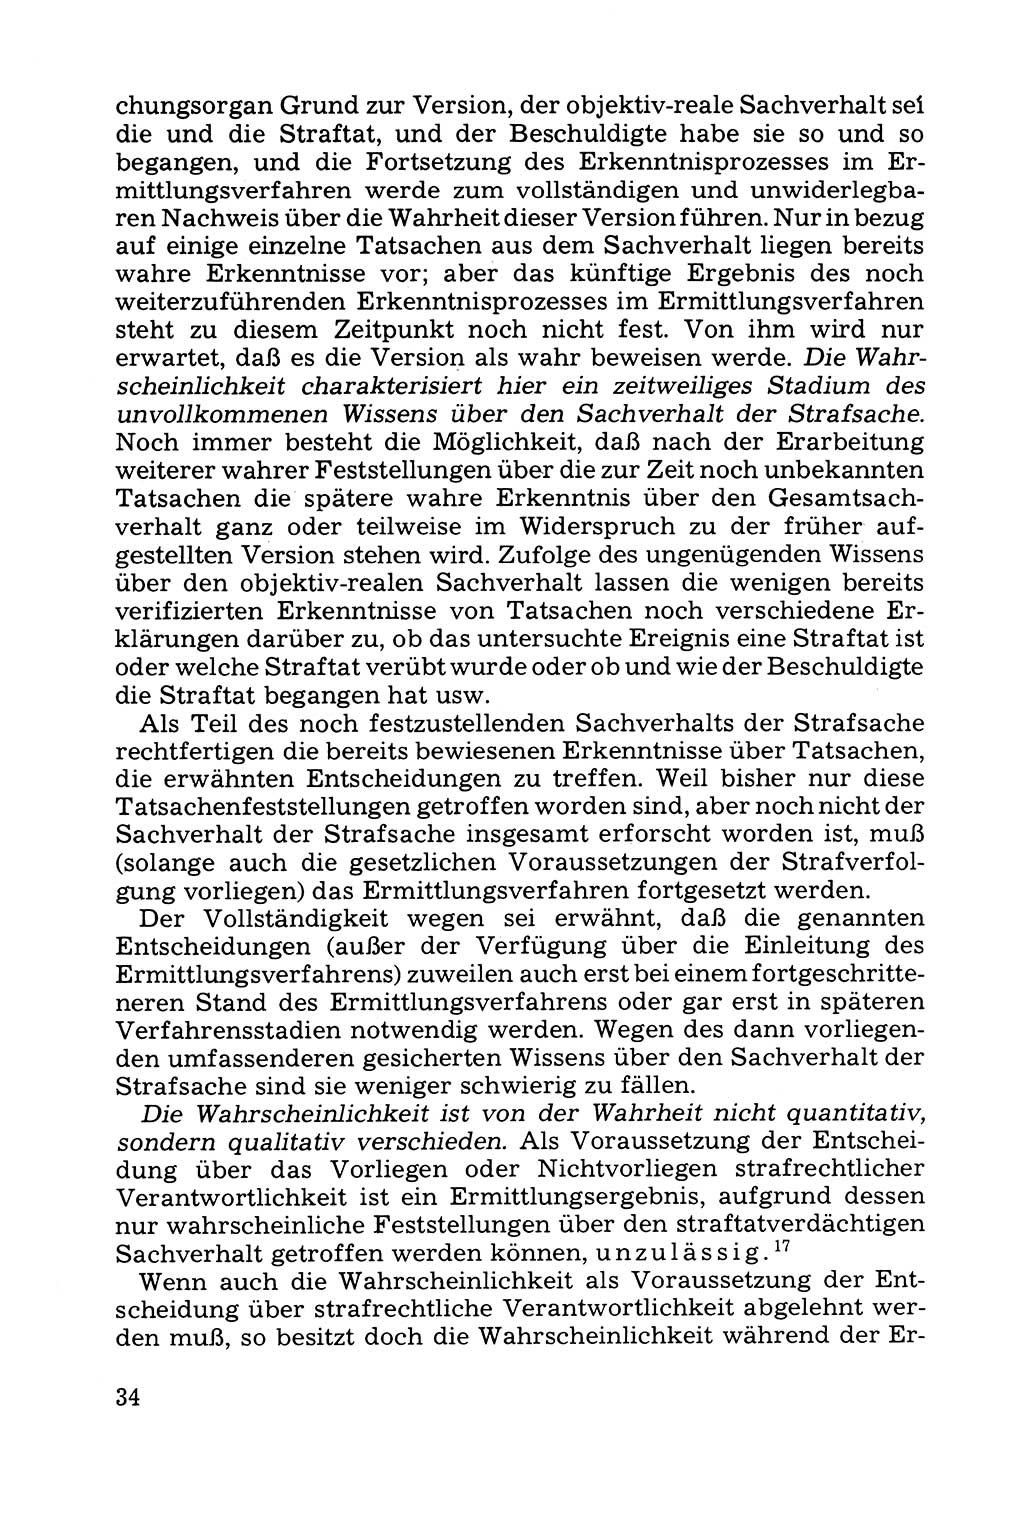 Grundfragen der Beweisführung im Ermittlungsverfahren [Deutsche Demokratische Republik (DDR)] 1980, Seite 34 (Bws.-Fhrg. EV DDR 1980, S. 34)